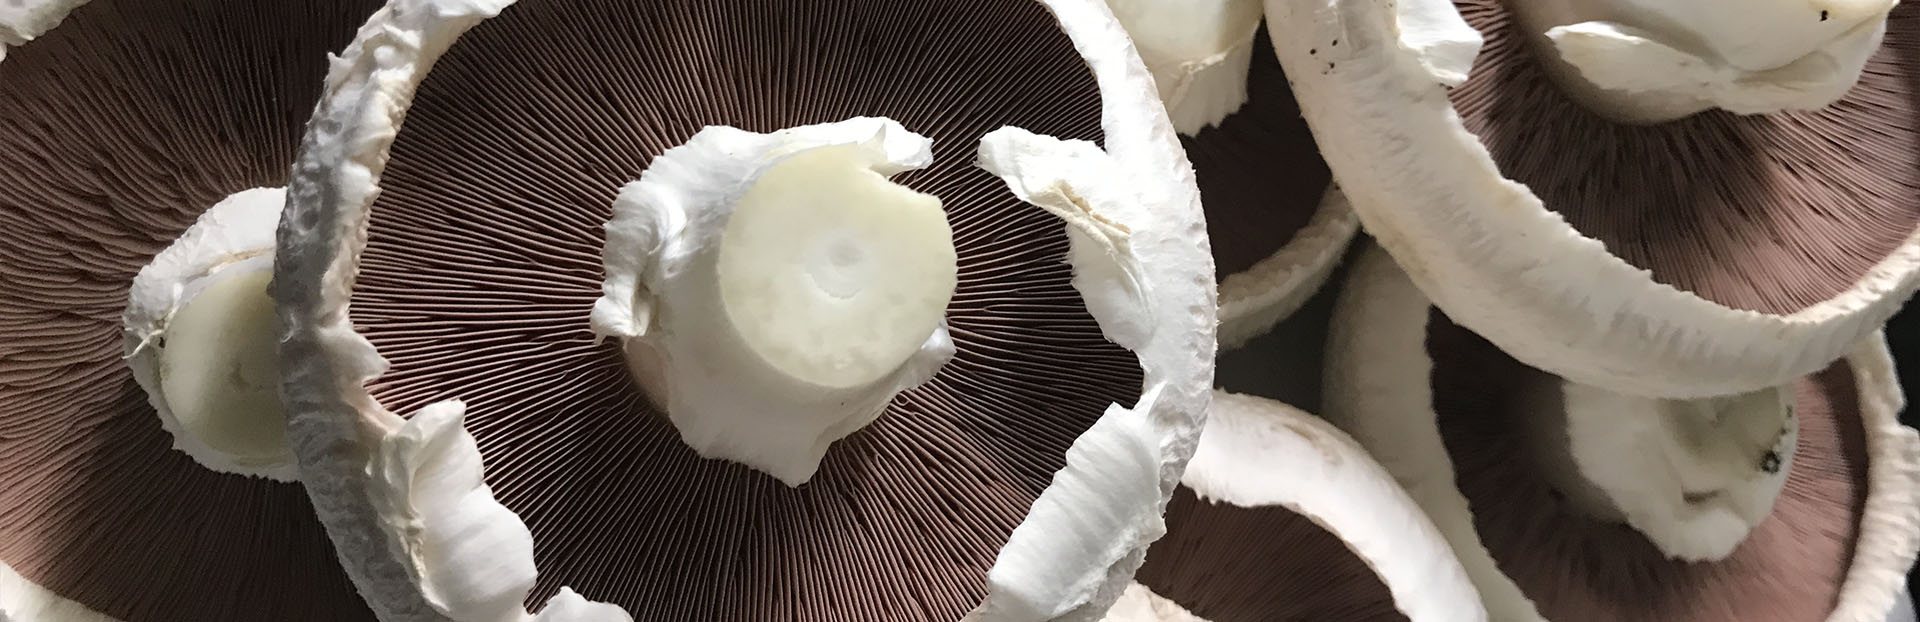 Mushroom Closeup